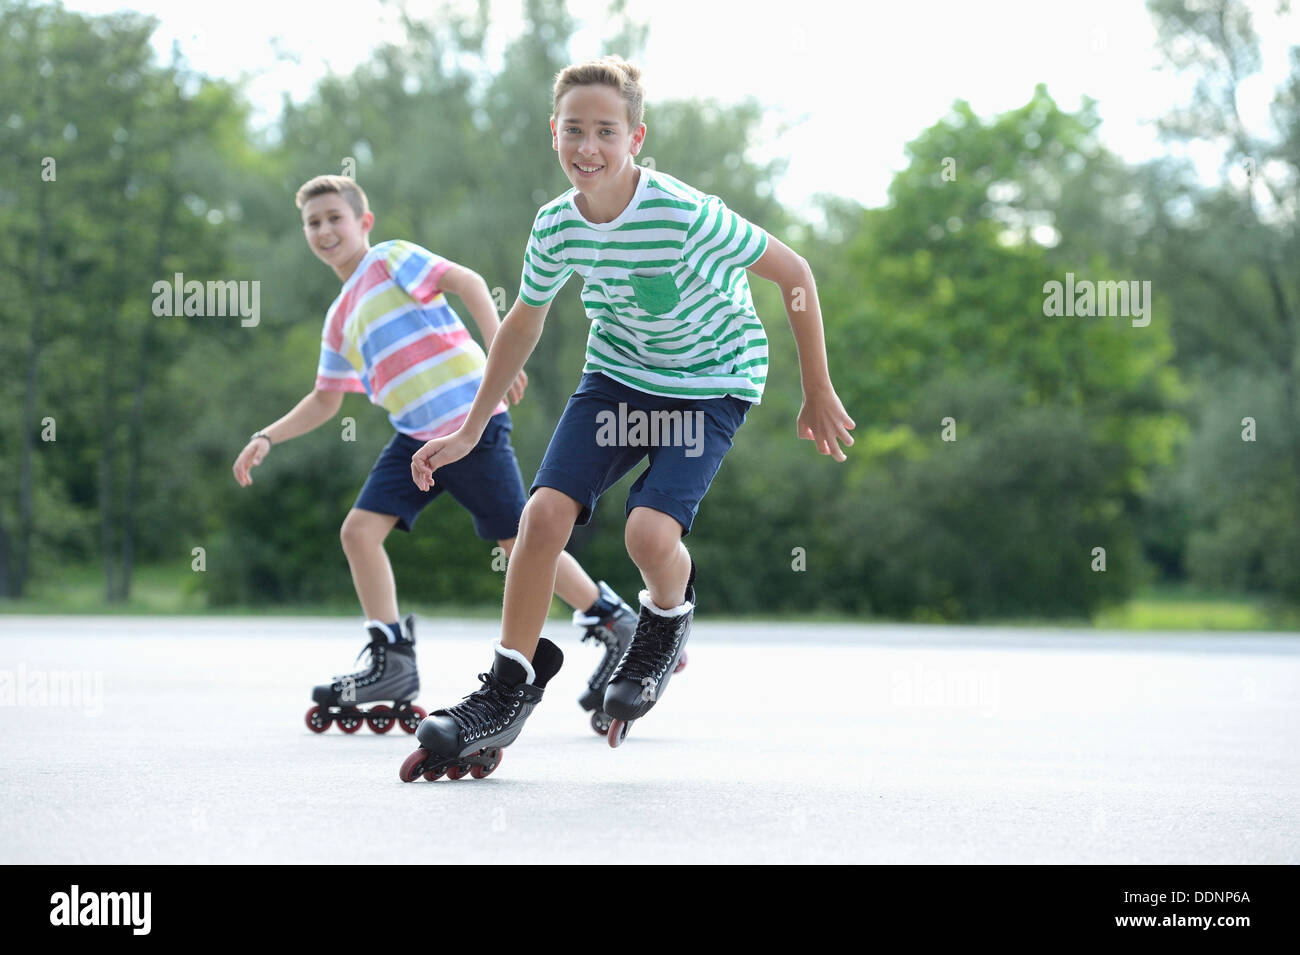 Deux garçons avec des patins à roues alignées sur une place de sport Banque D'Images